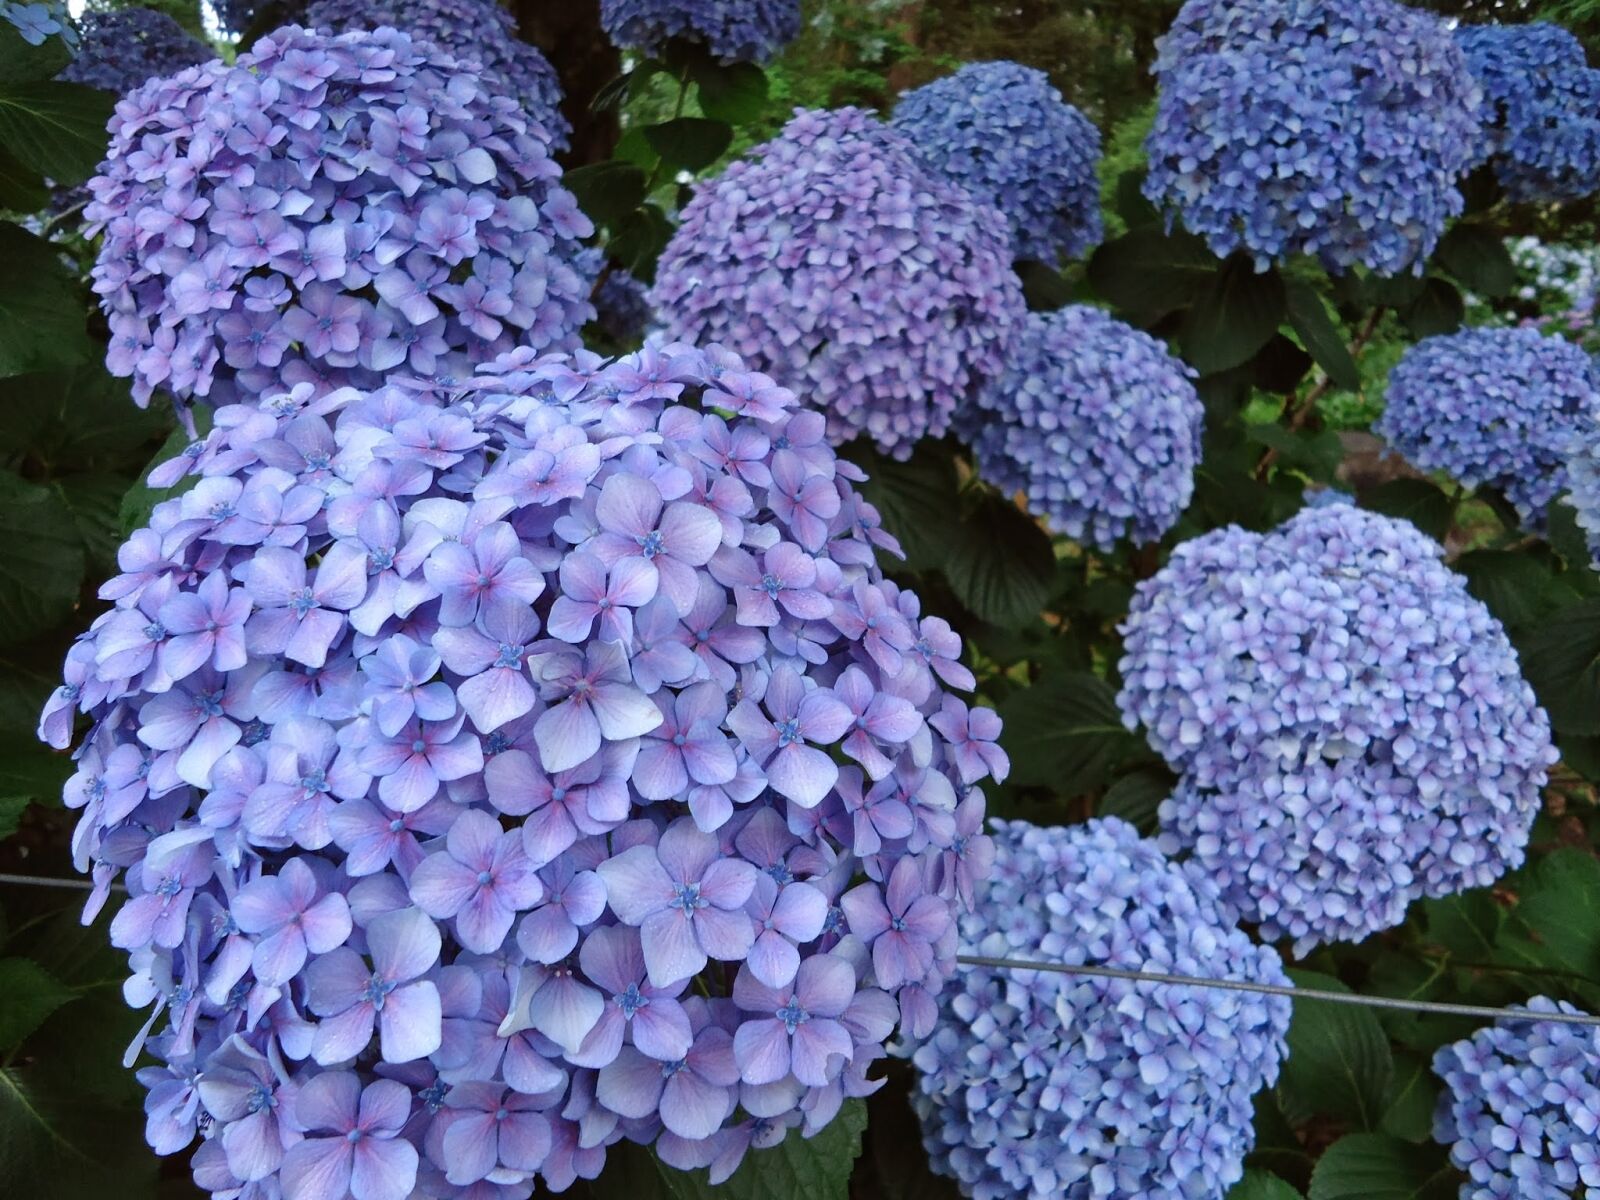 Sony Cyber-shot DSC-W610 sample photo. Flowers, blue flowers, hydrangeas photography